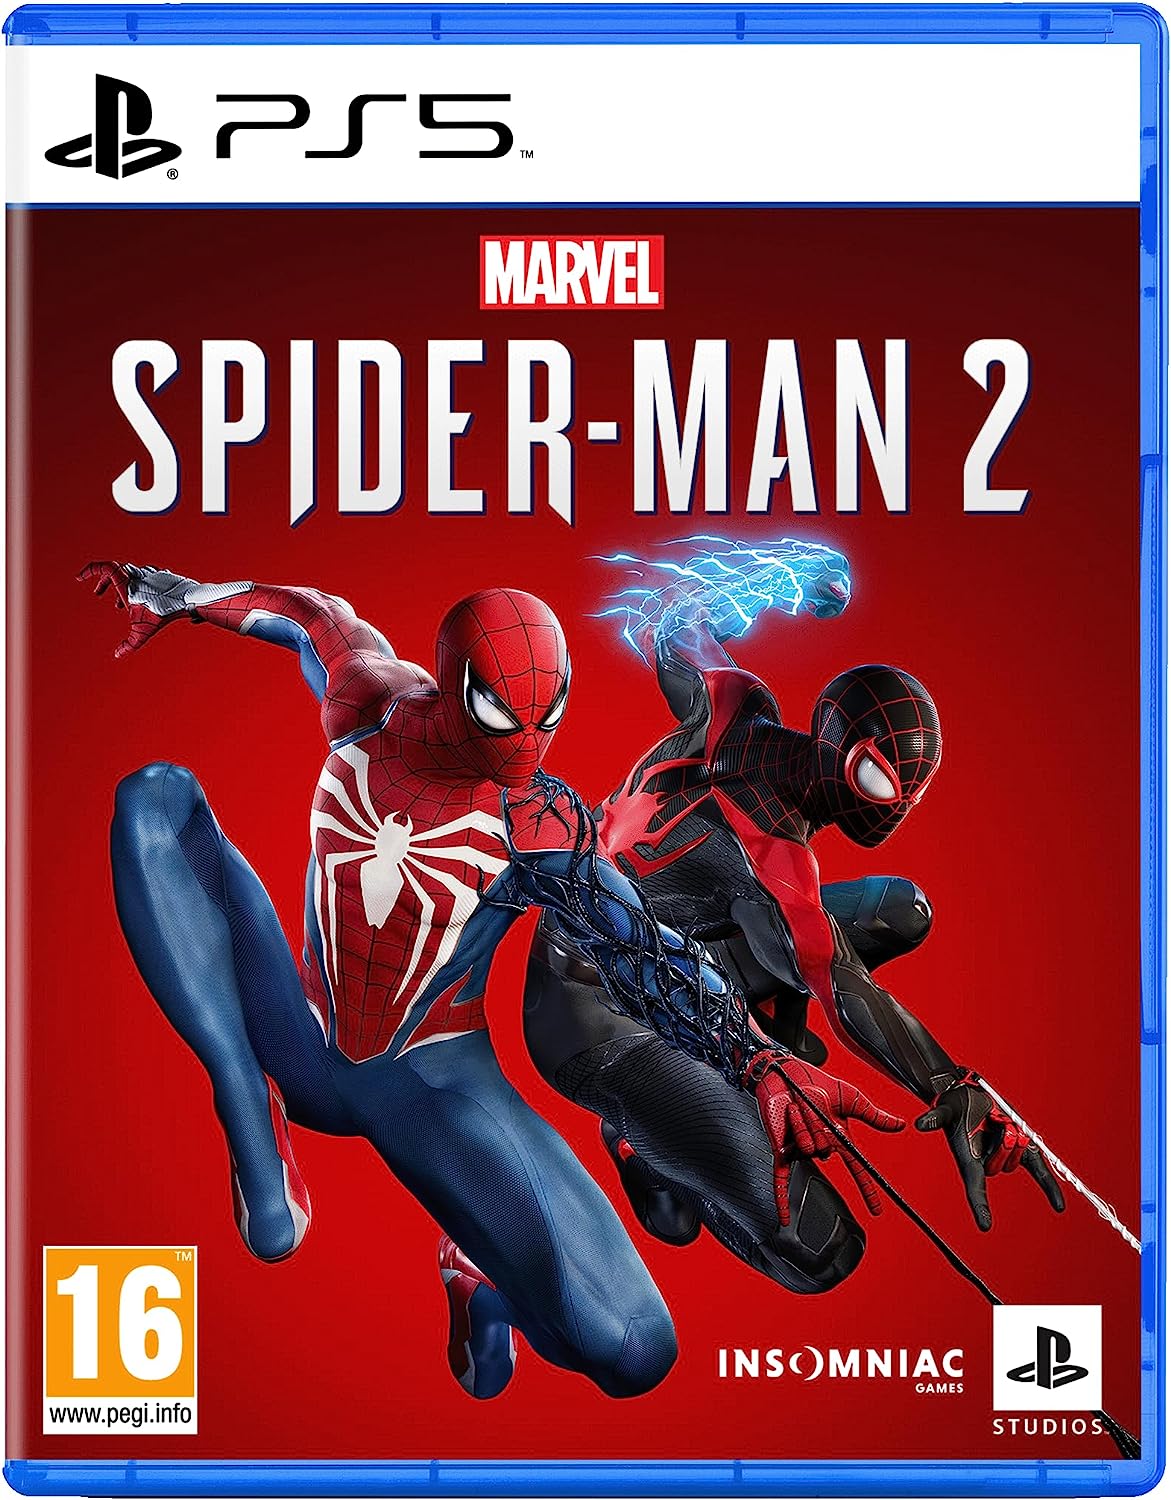 Marvel's Spider-Man 2 è il "terzo" capitolo della saga videoludica ideata da Insomniac Games